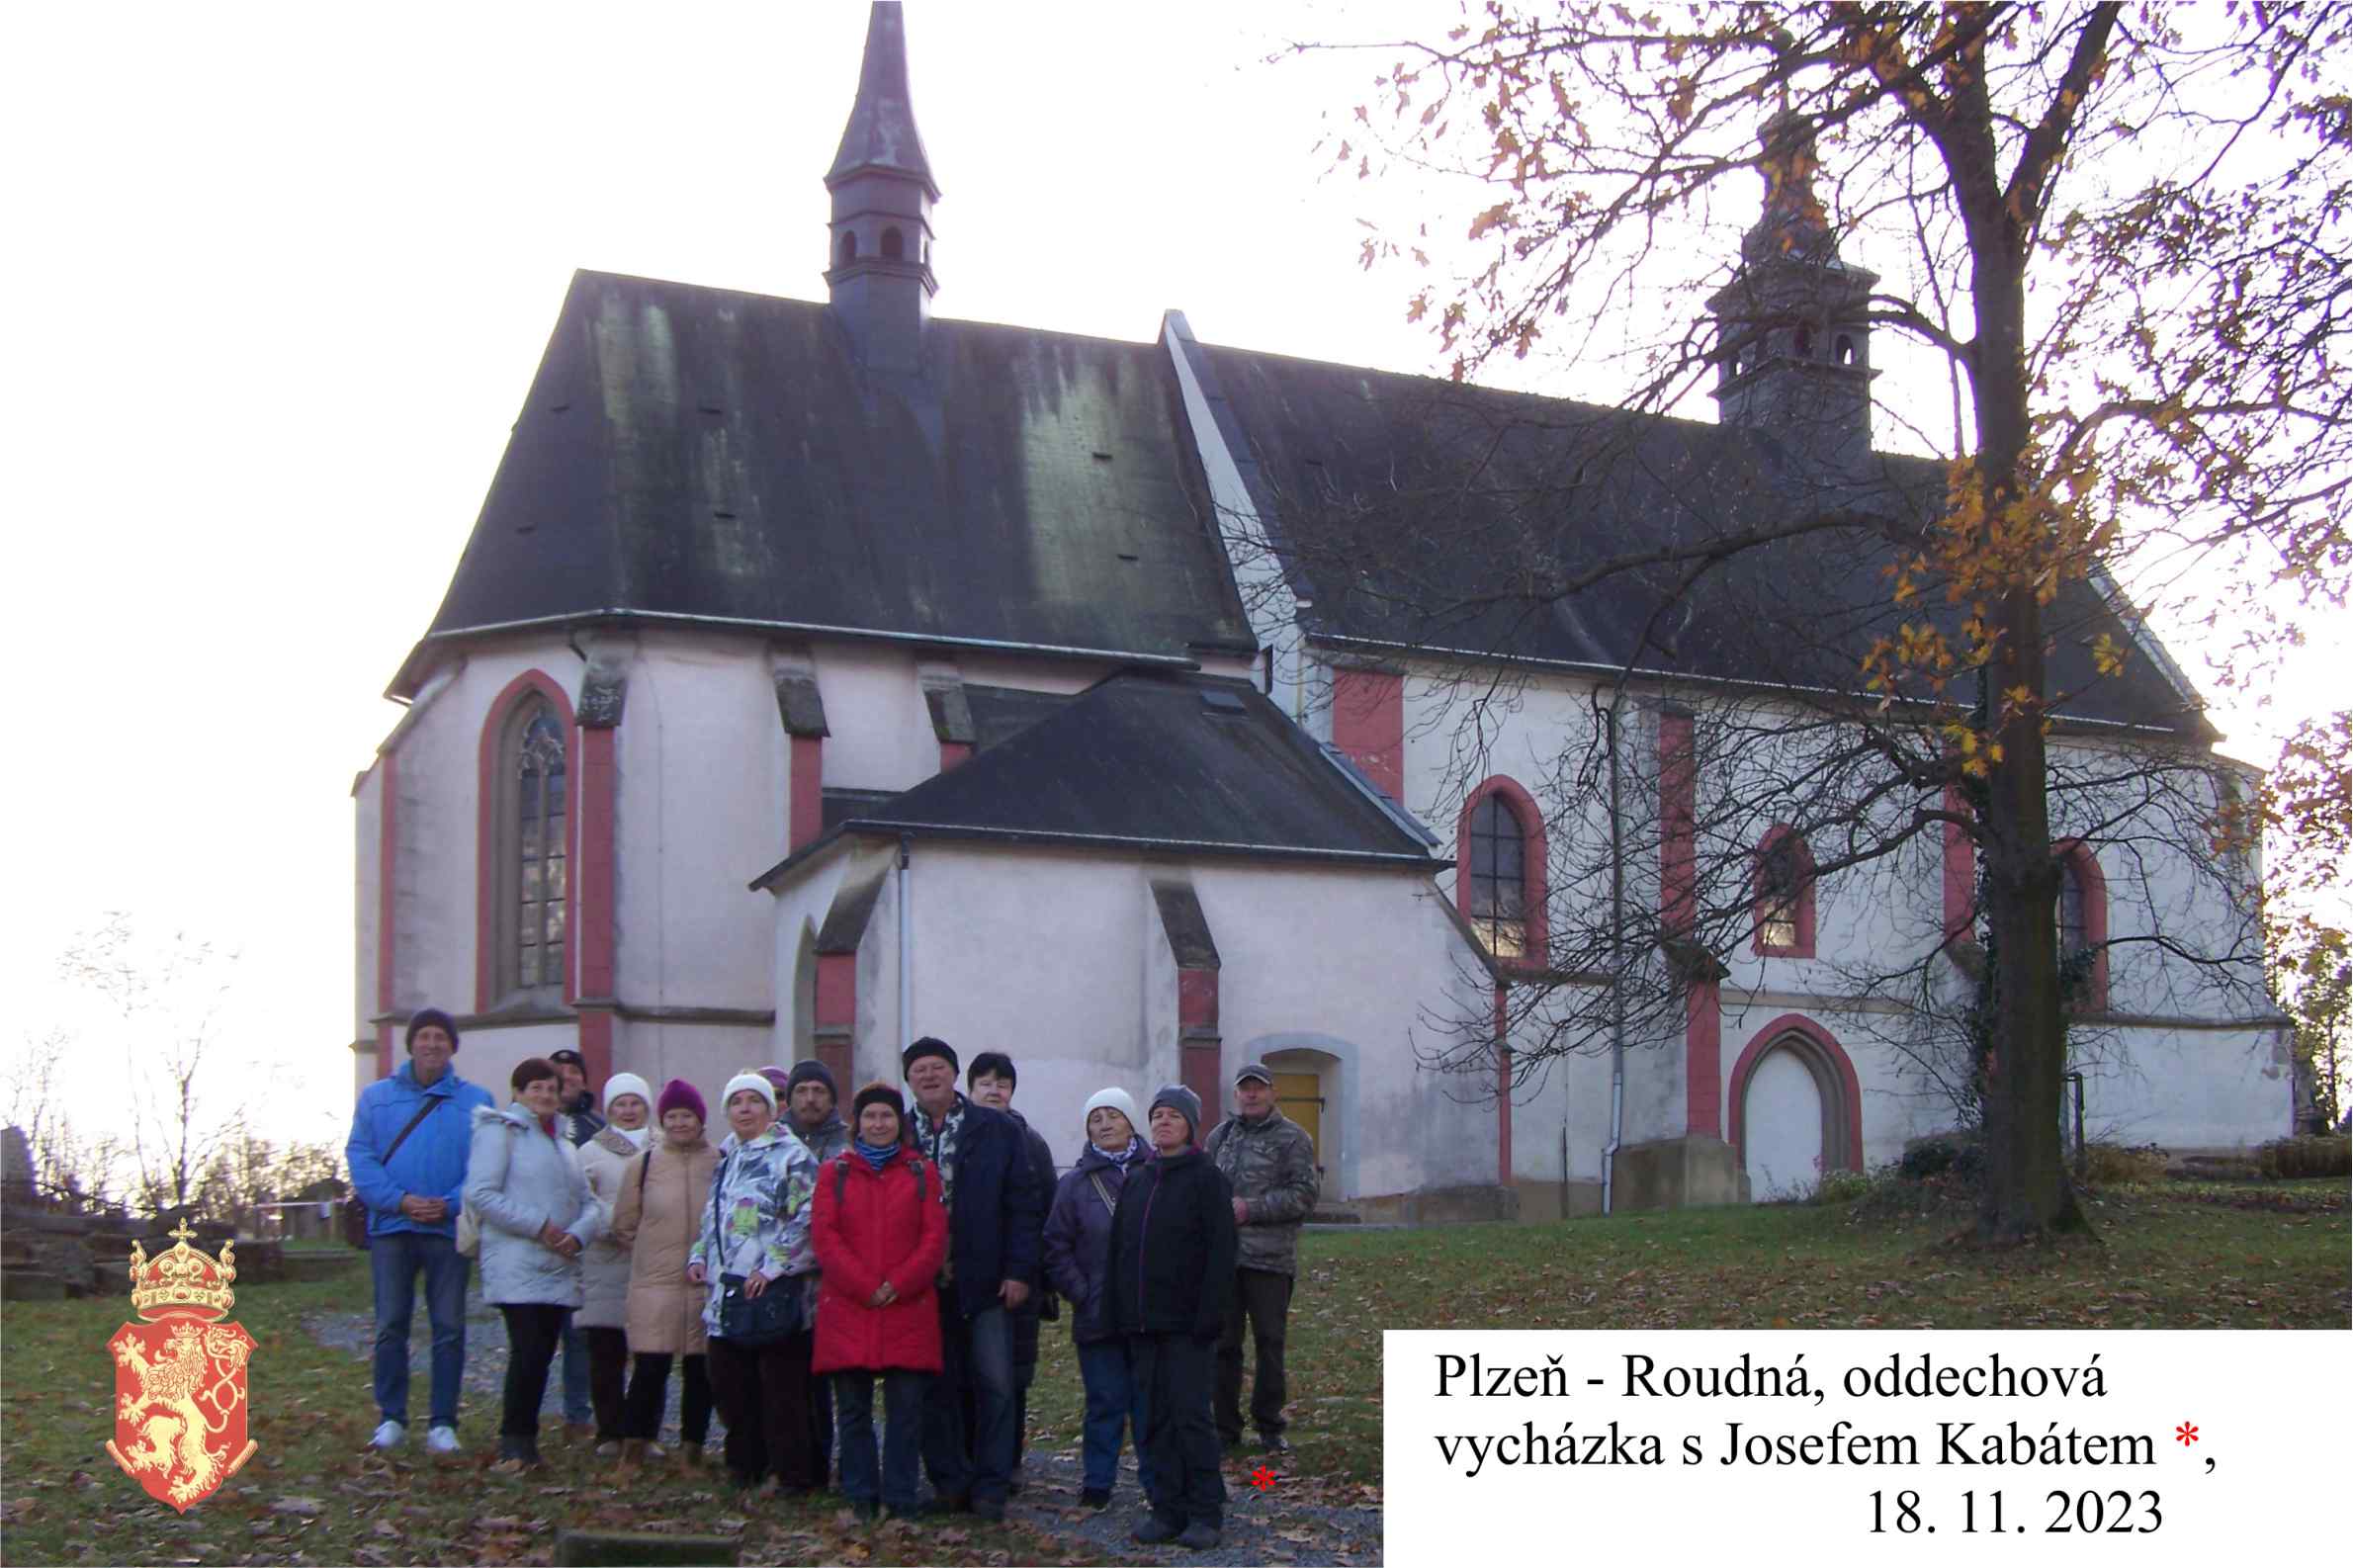 Plzeňský kostel na Roudné  je spjatý s úžasnou skupinou pomáhajících dobrovolníků již 50 let.